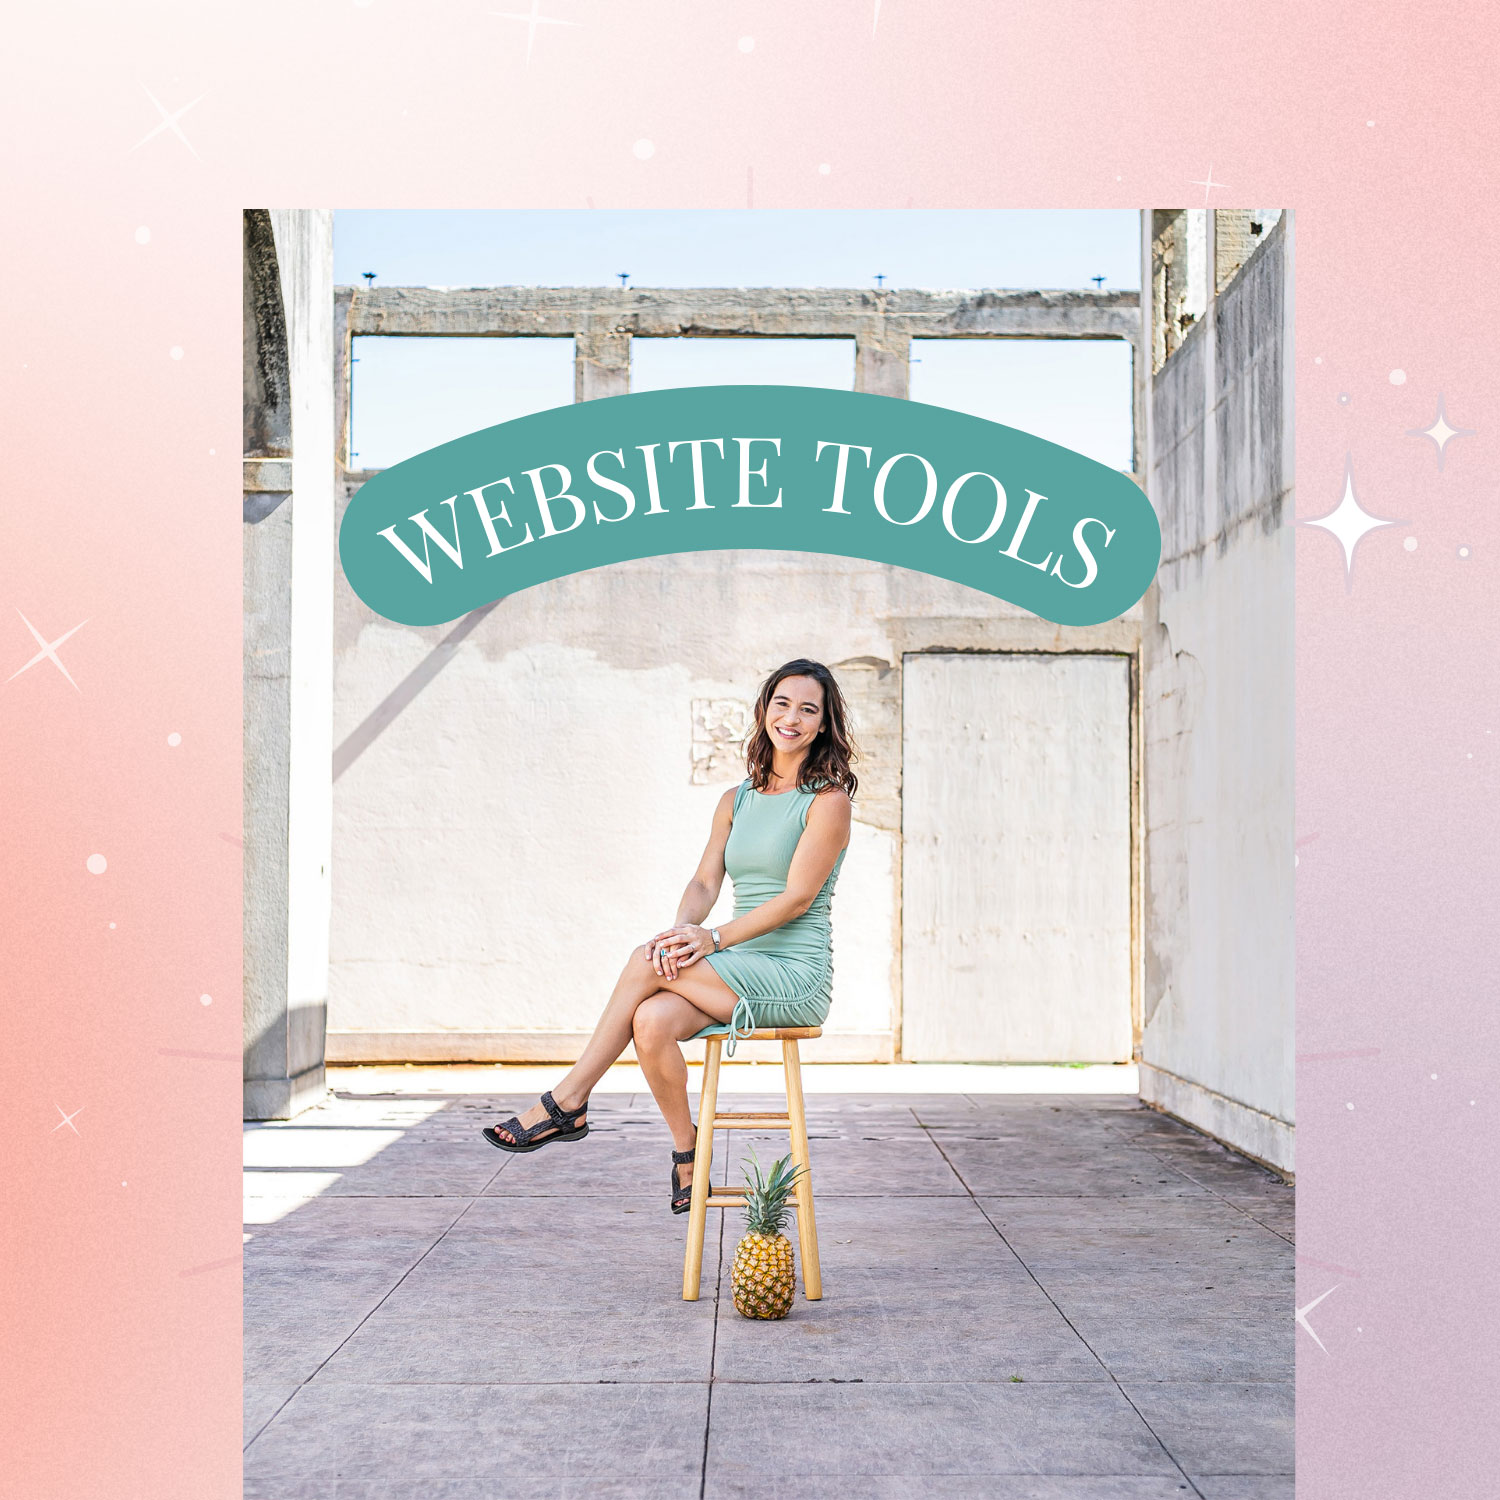 Best Website Tools